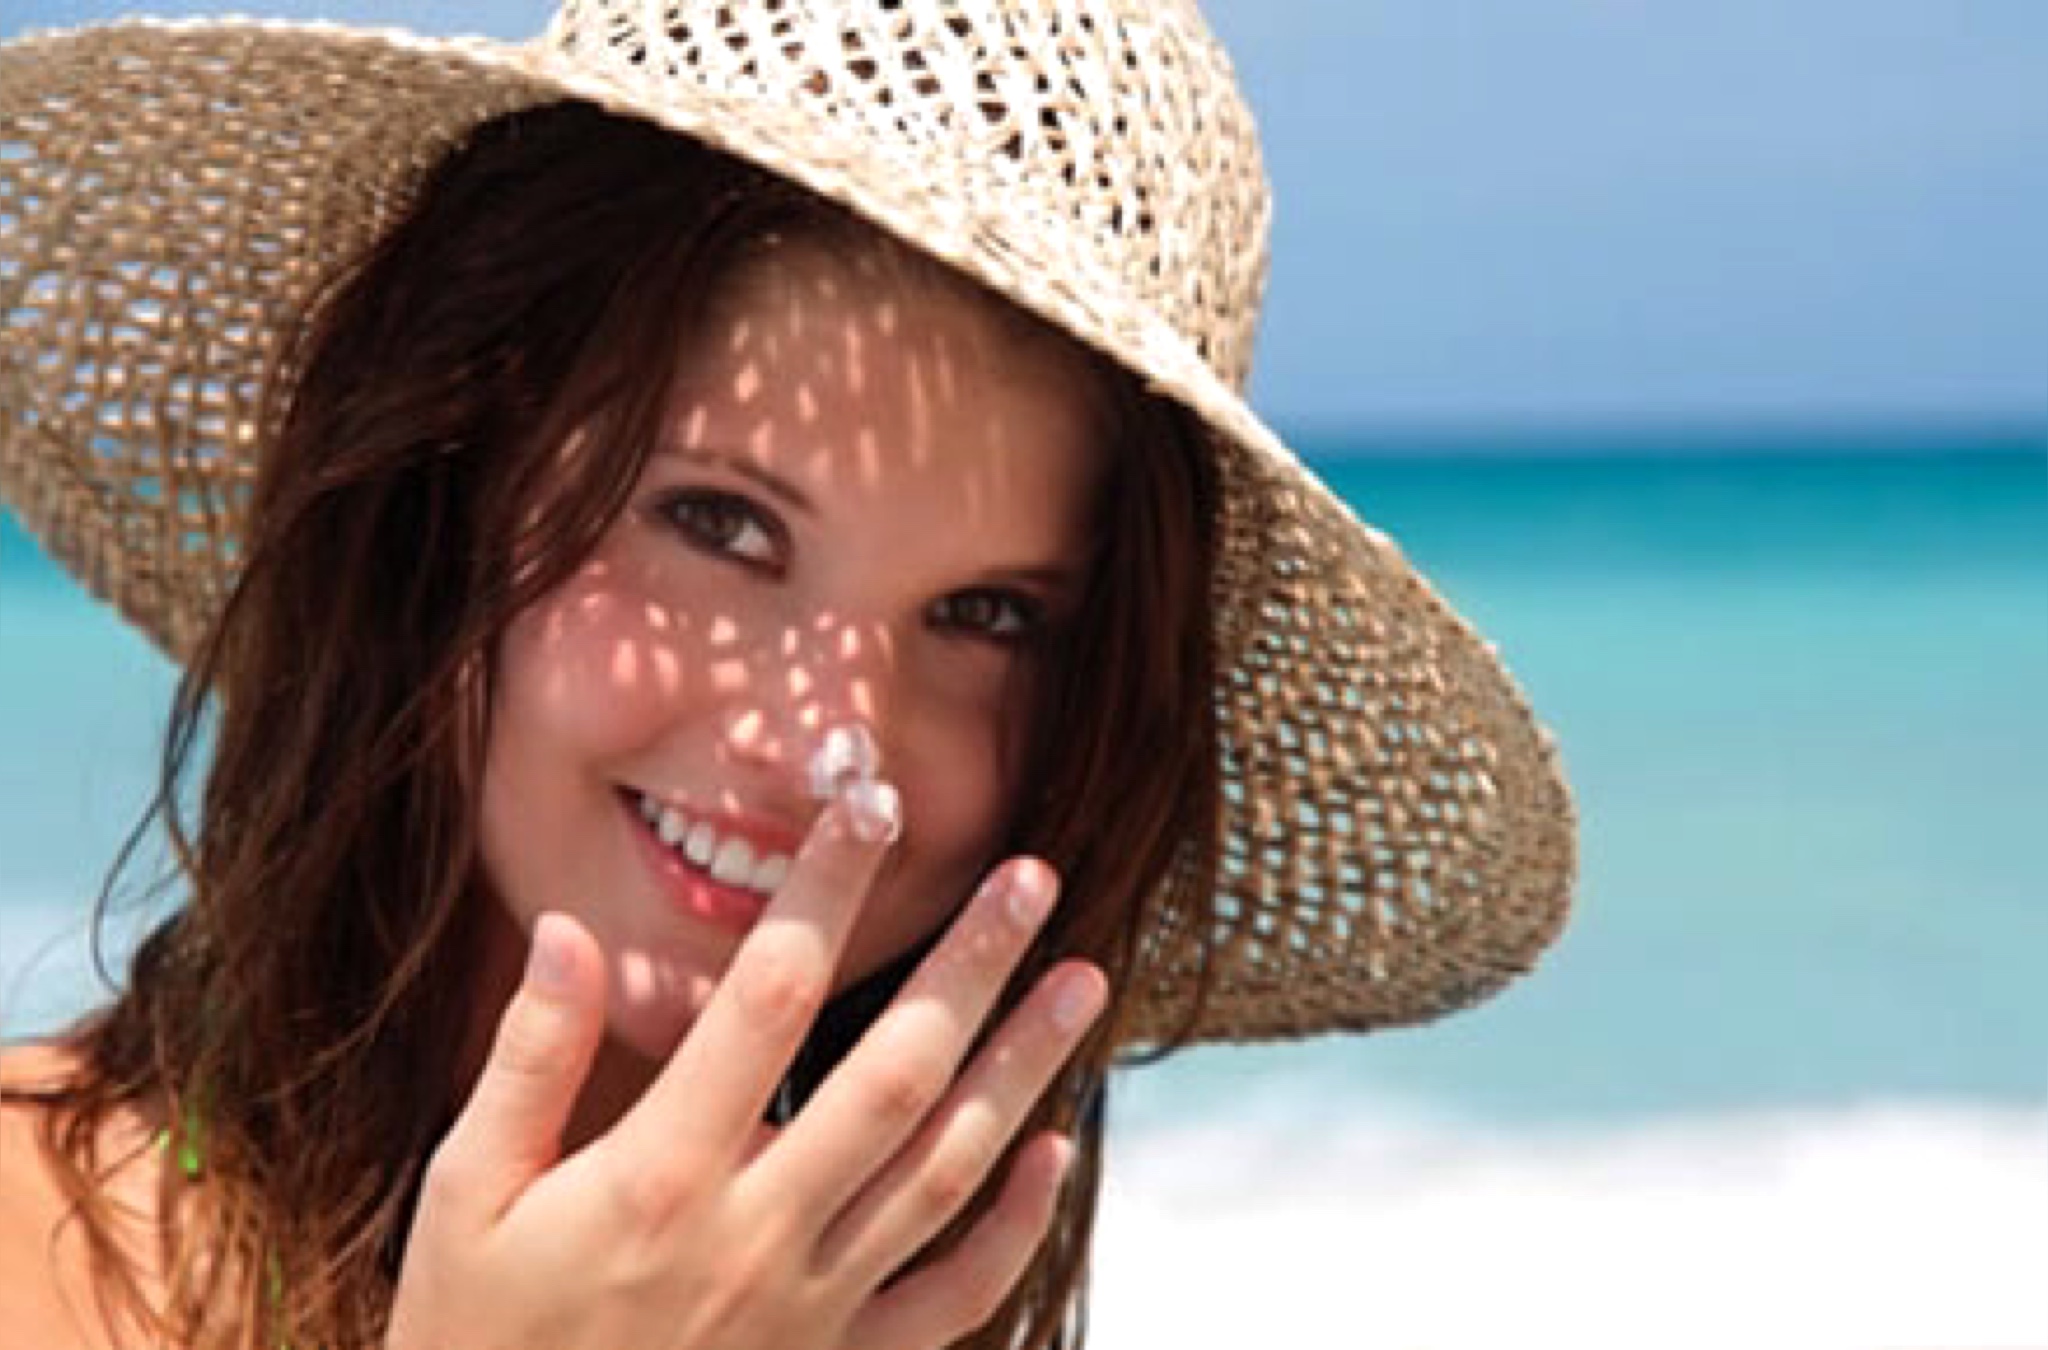 کرم ضد آفتاب برای آرایش دختران نوجوان - لوازم آرایشی مورد نیاز آرایش ساده برای دختران نوجوان